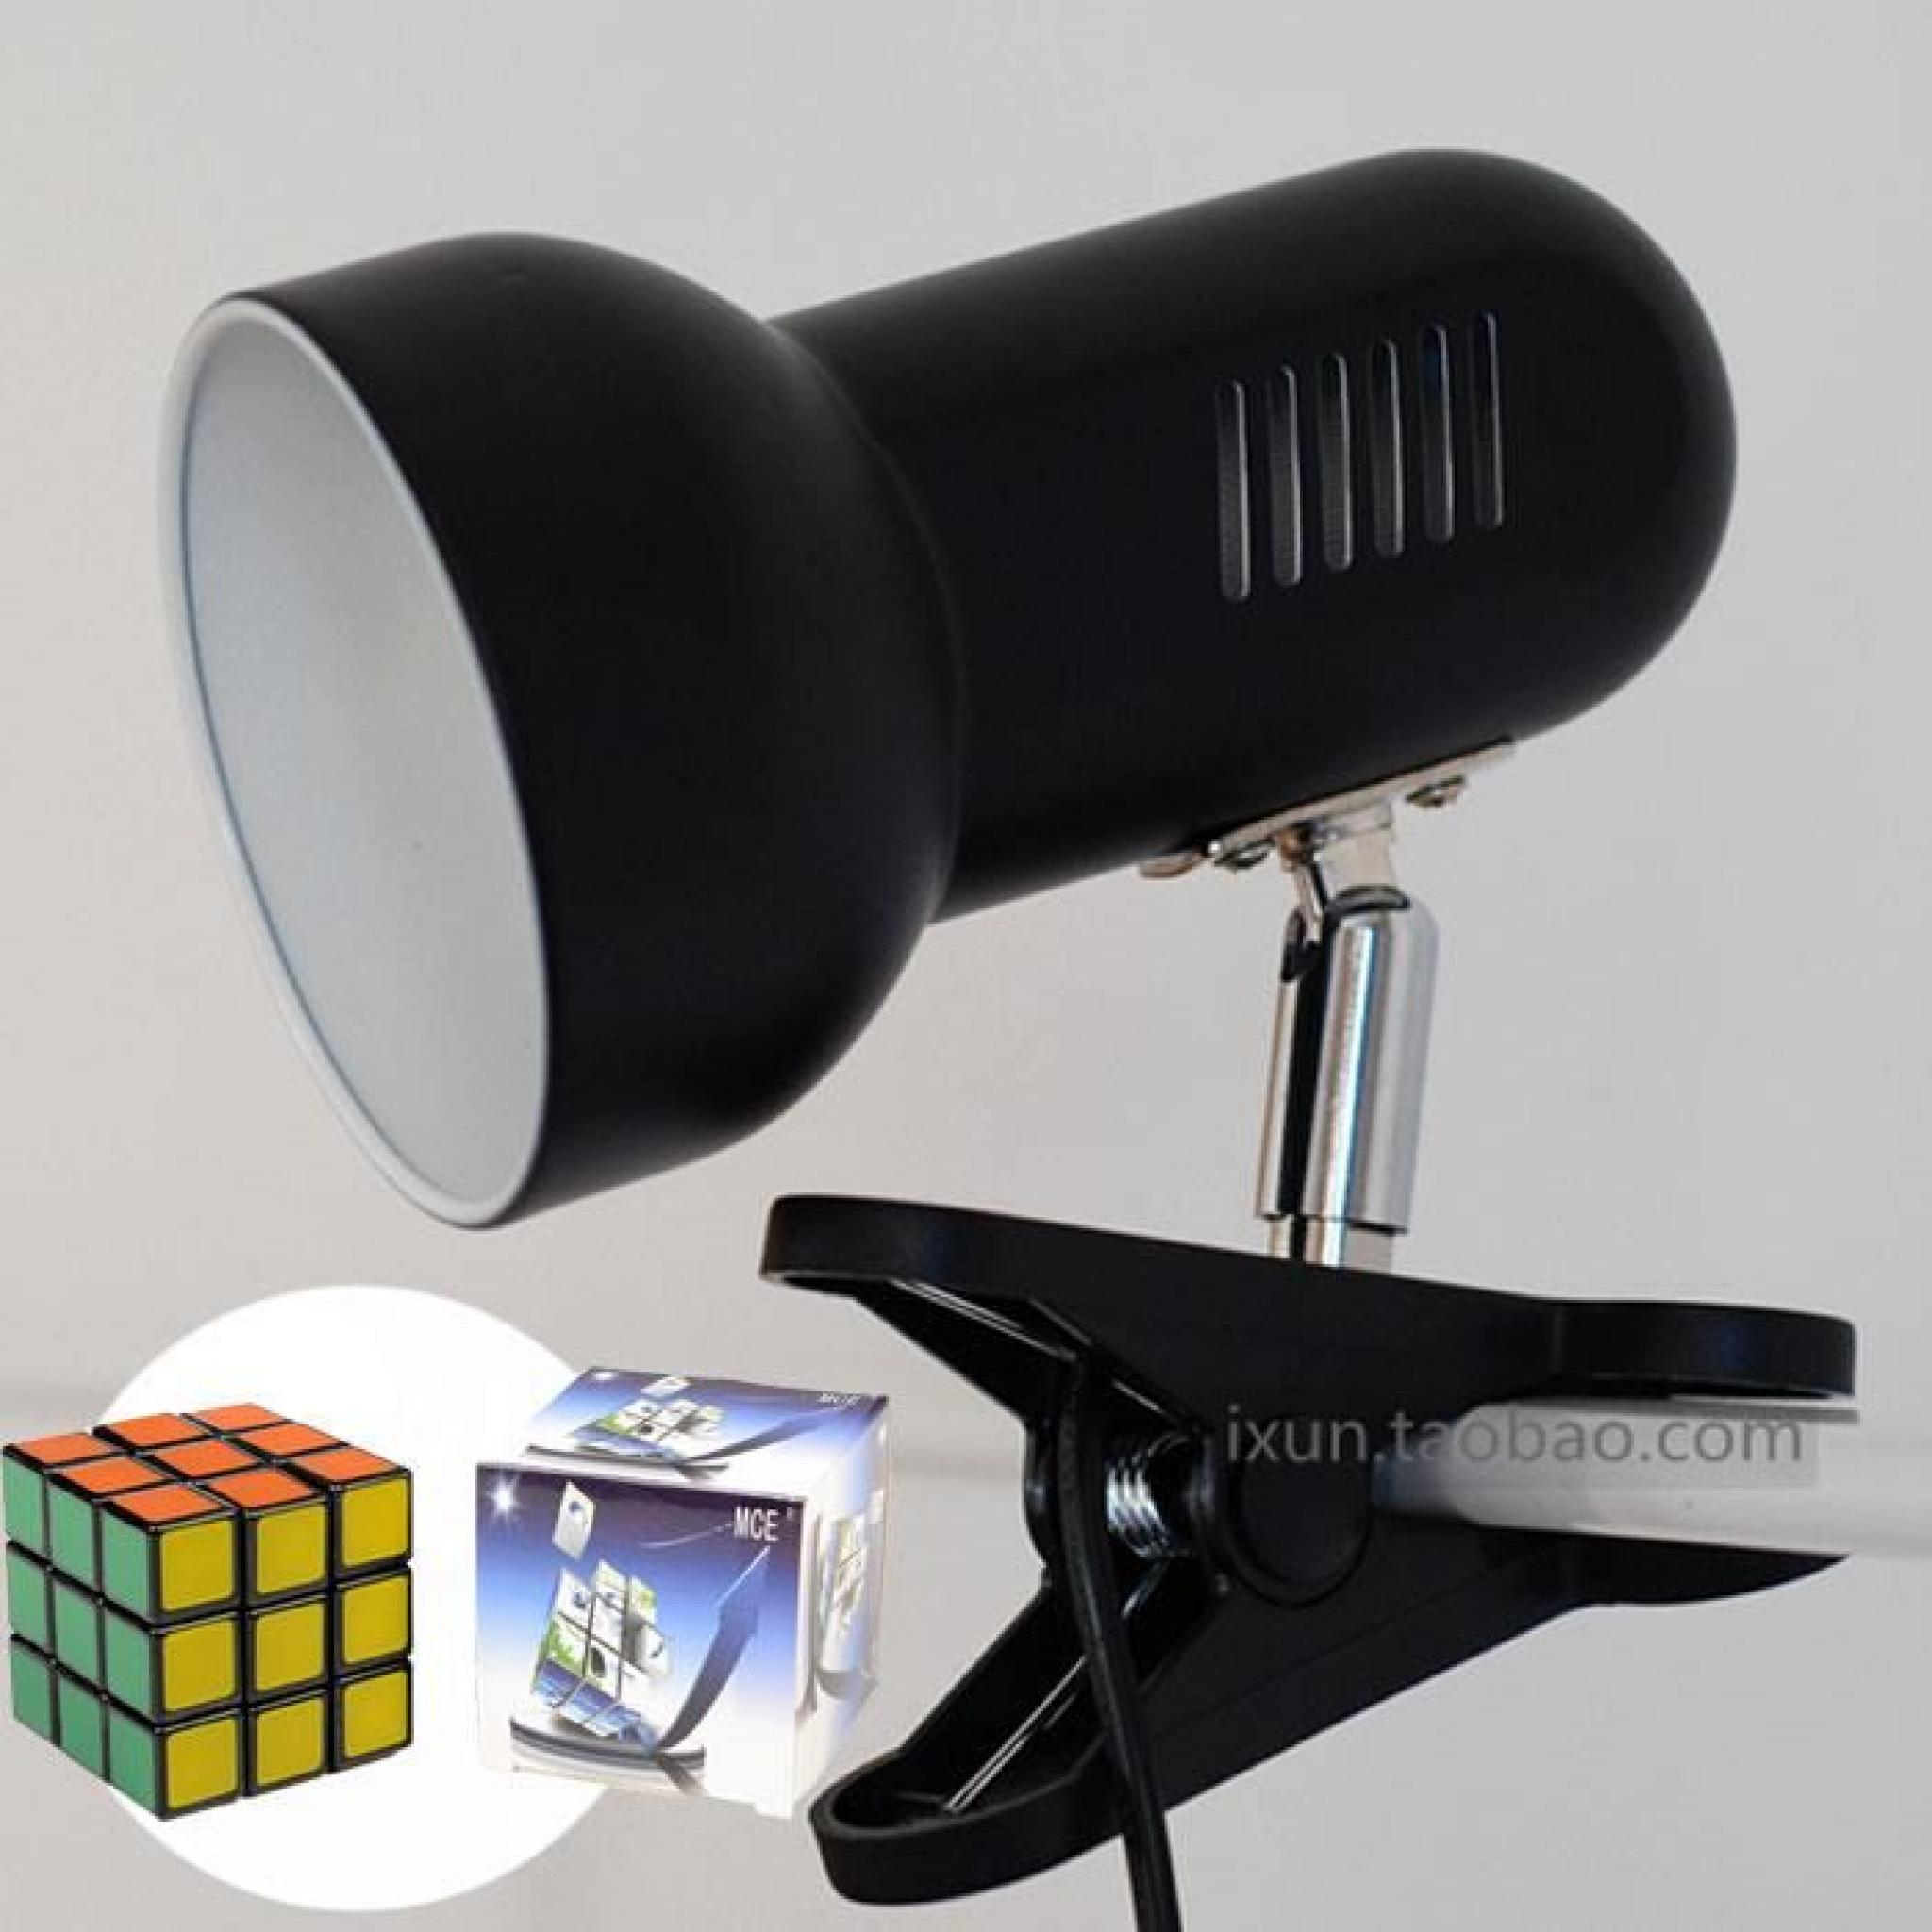 MCE ® Clip-on Lampe LED Flexible Avec Ampoule 3W LED (Noir+lumière chaude ) + un Rubik's cube gratuit